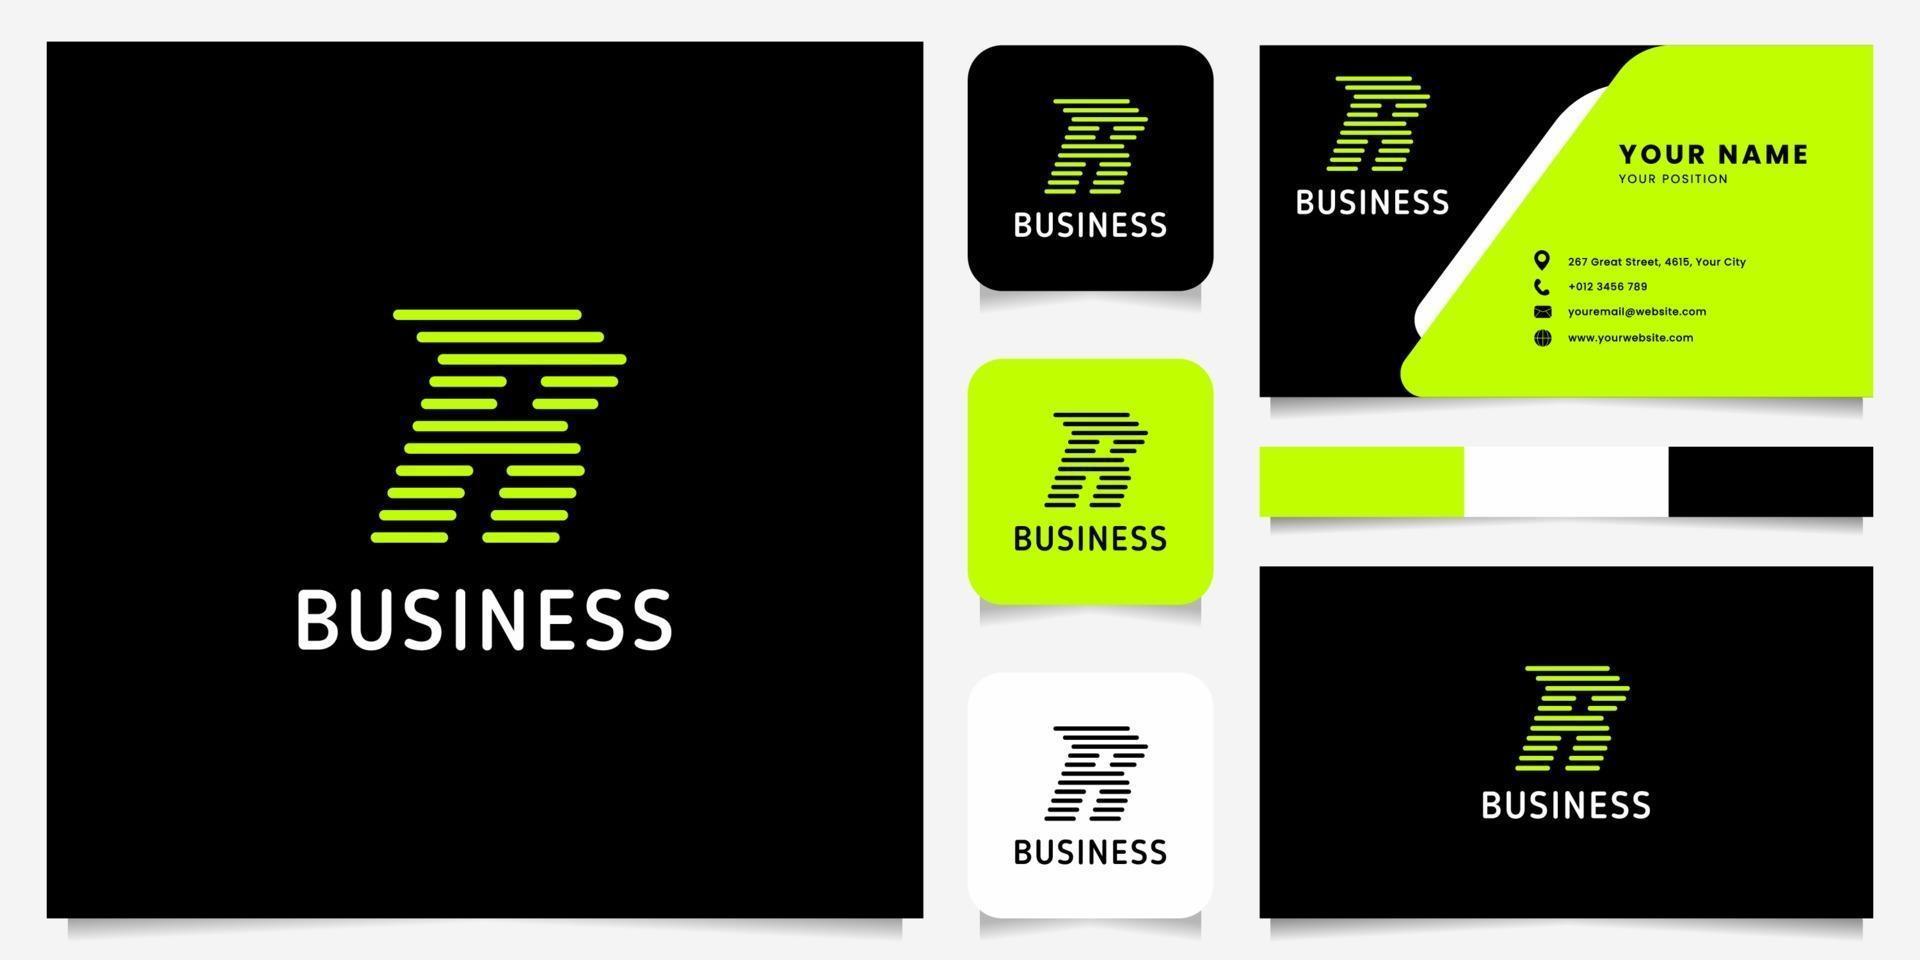 heldergroene pijl afgeronde lijnen letter r-logo op zwarte achtergrond met sjabloon voor visitekaartjes vector